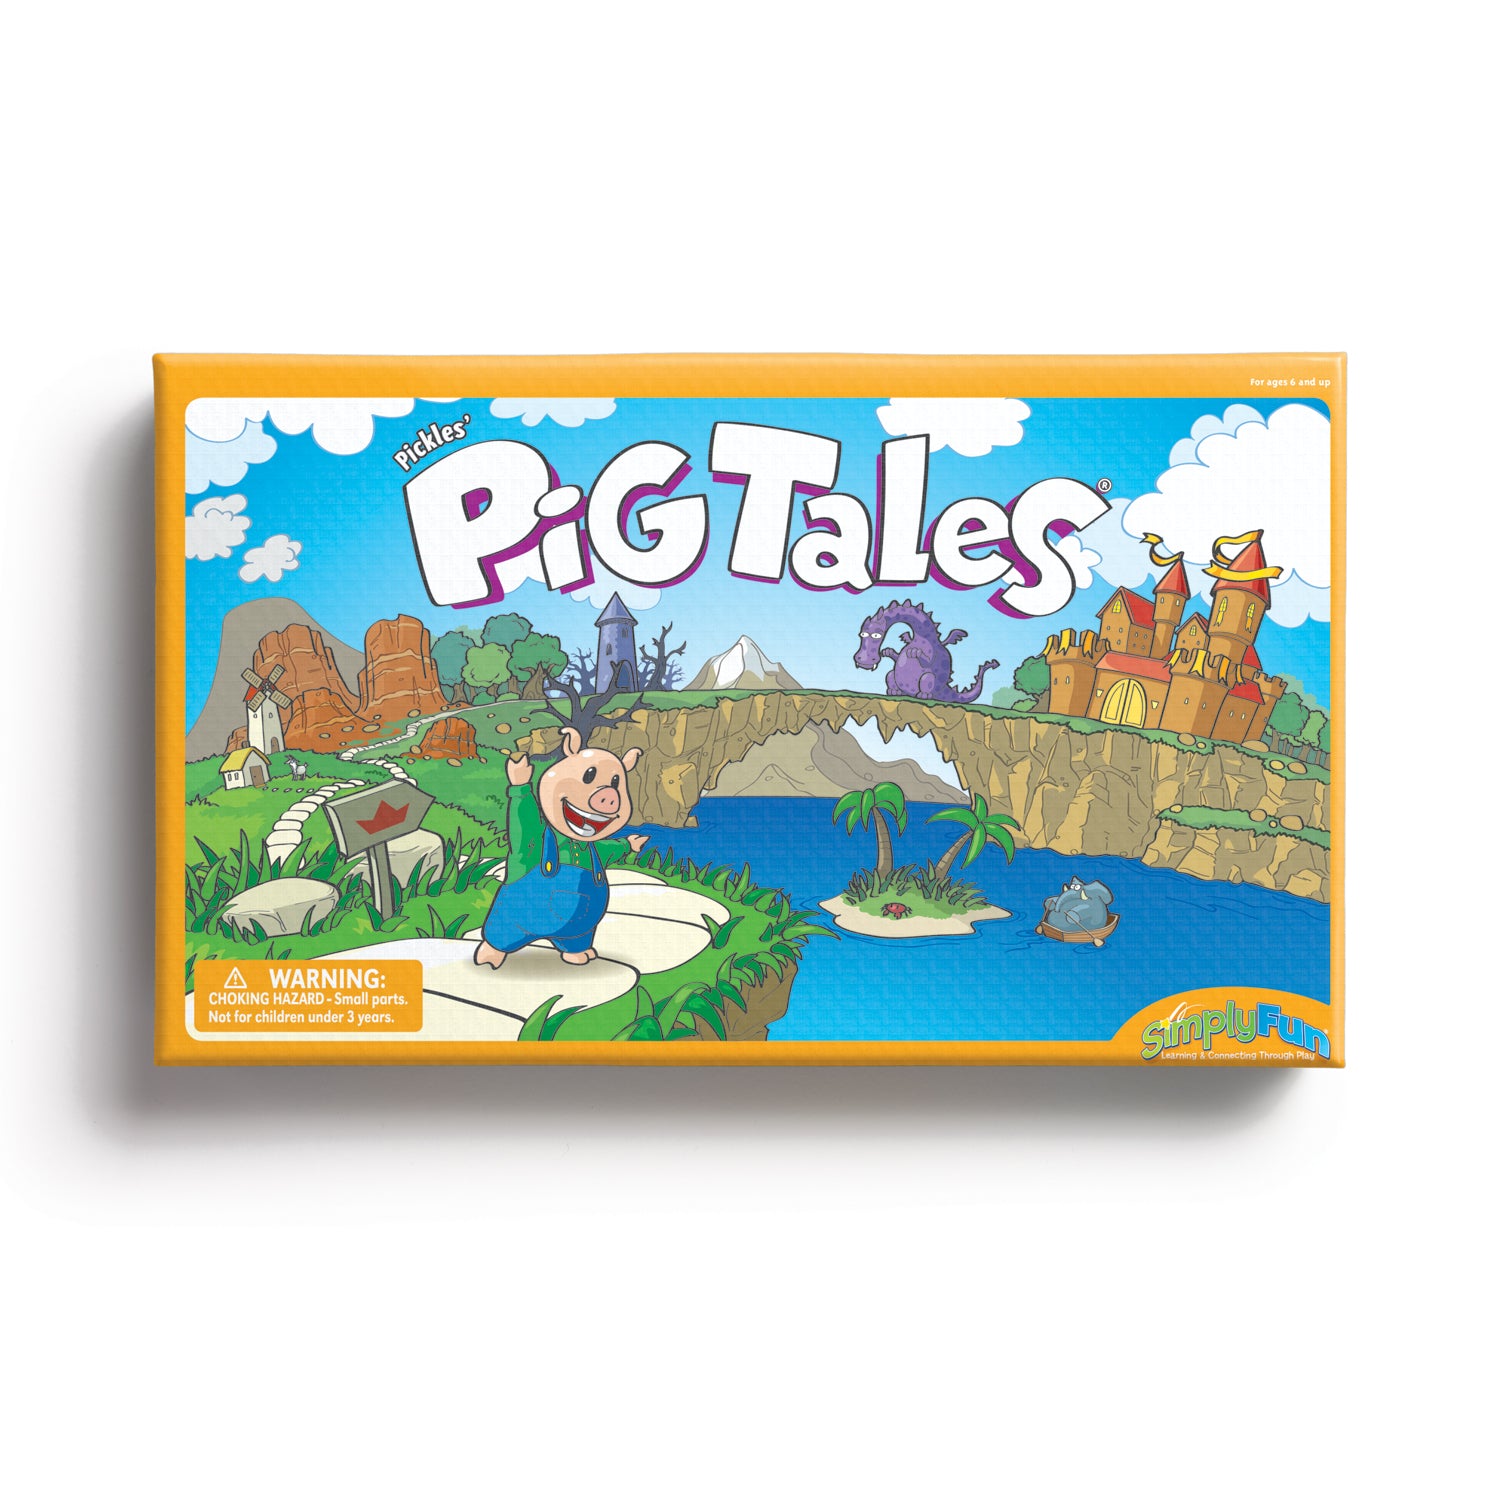 Pickles' Pig Tales: storytelling & memory game – SimplyFun